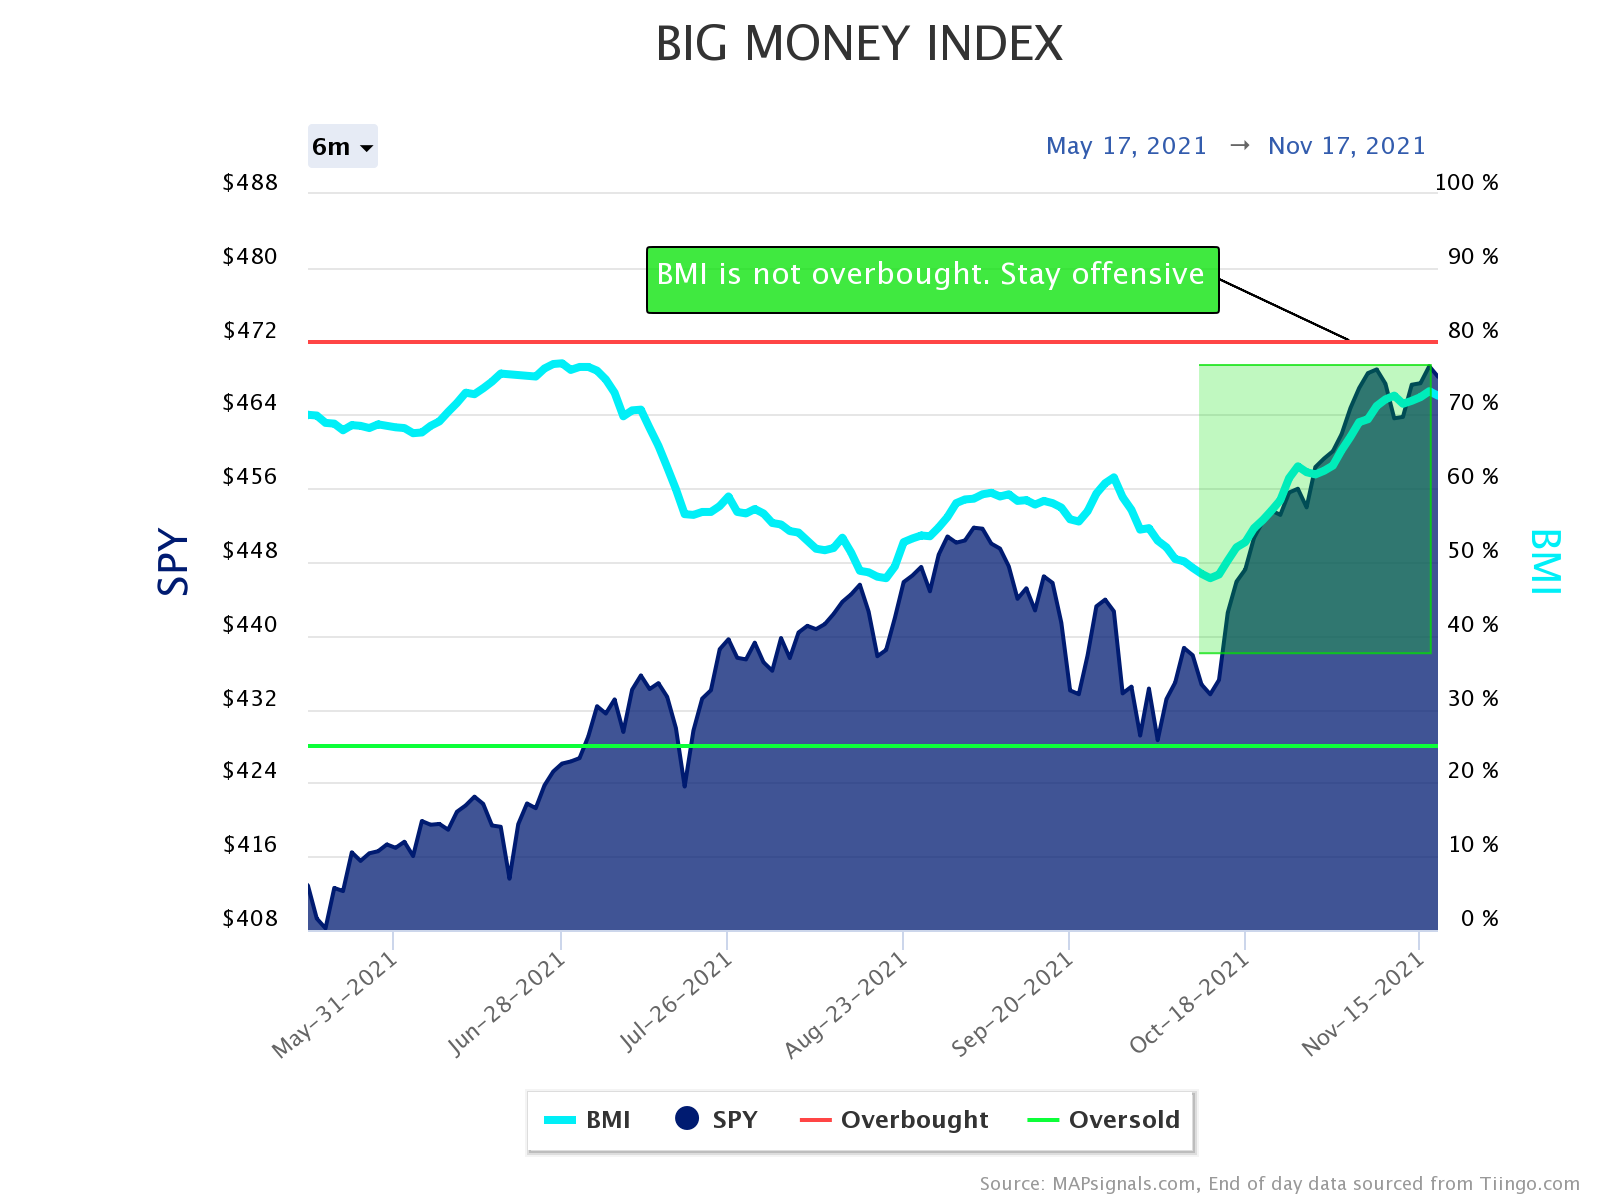 Big Money Index is trending higher